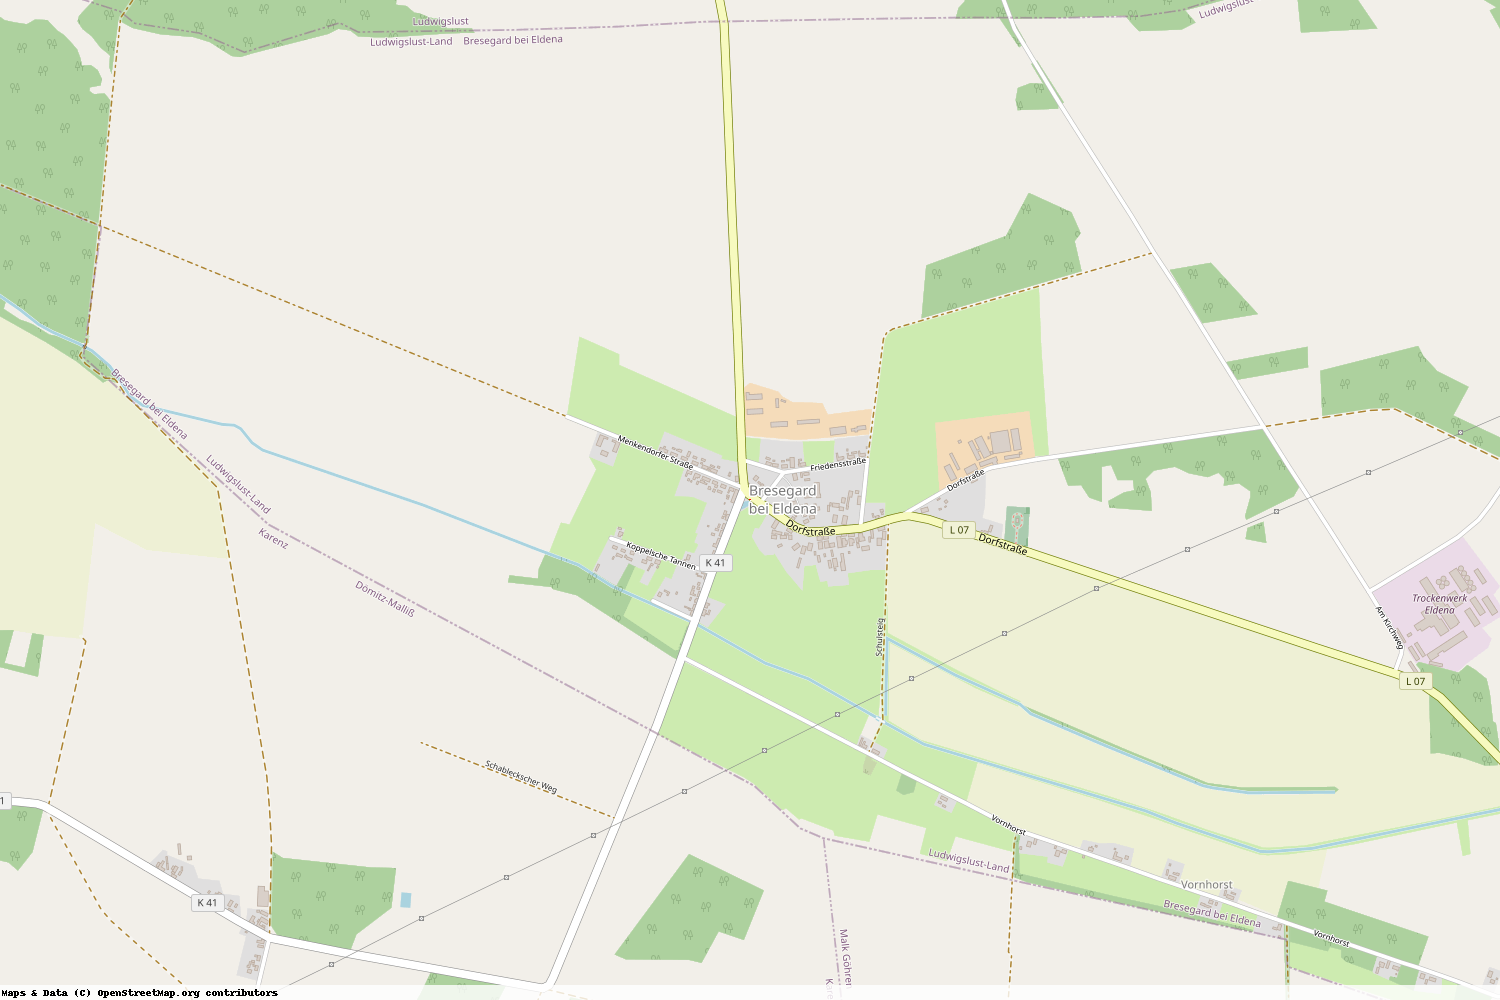 Ist gerade Stromausfall in Mecklenburg-Vorpommern - Ludwigslust-Parchim - Bresegard bei Eldena?